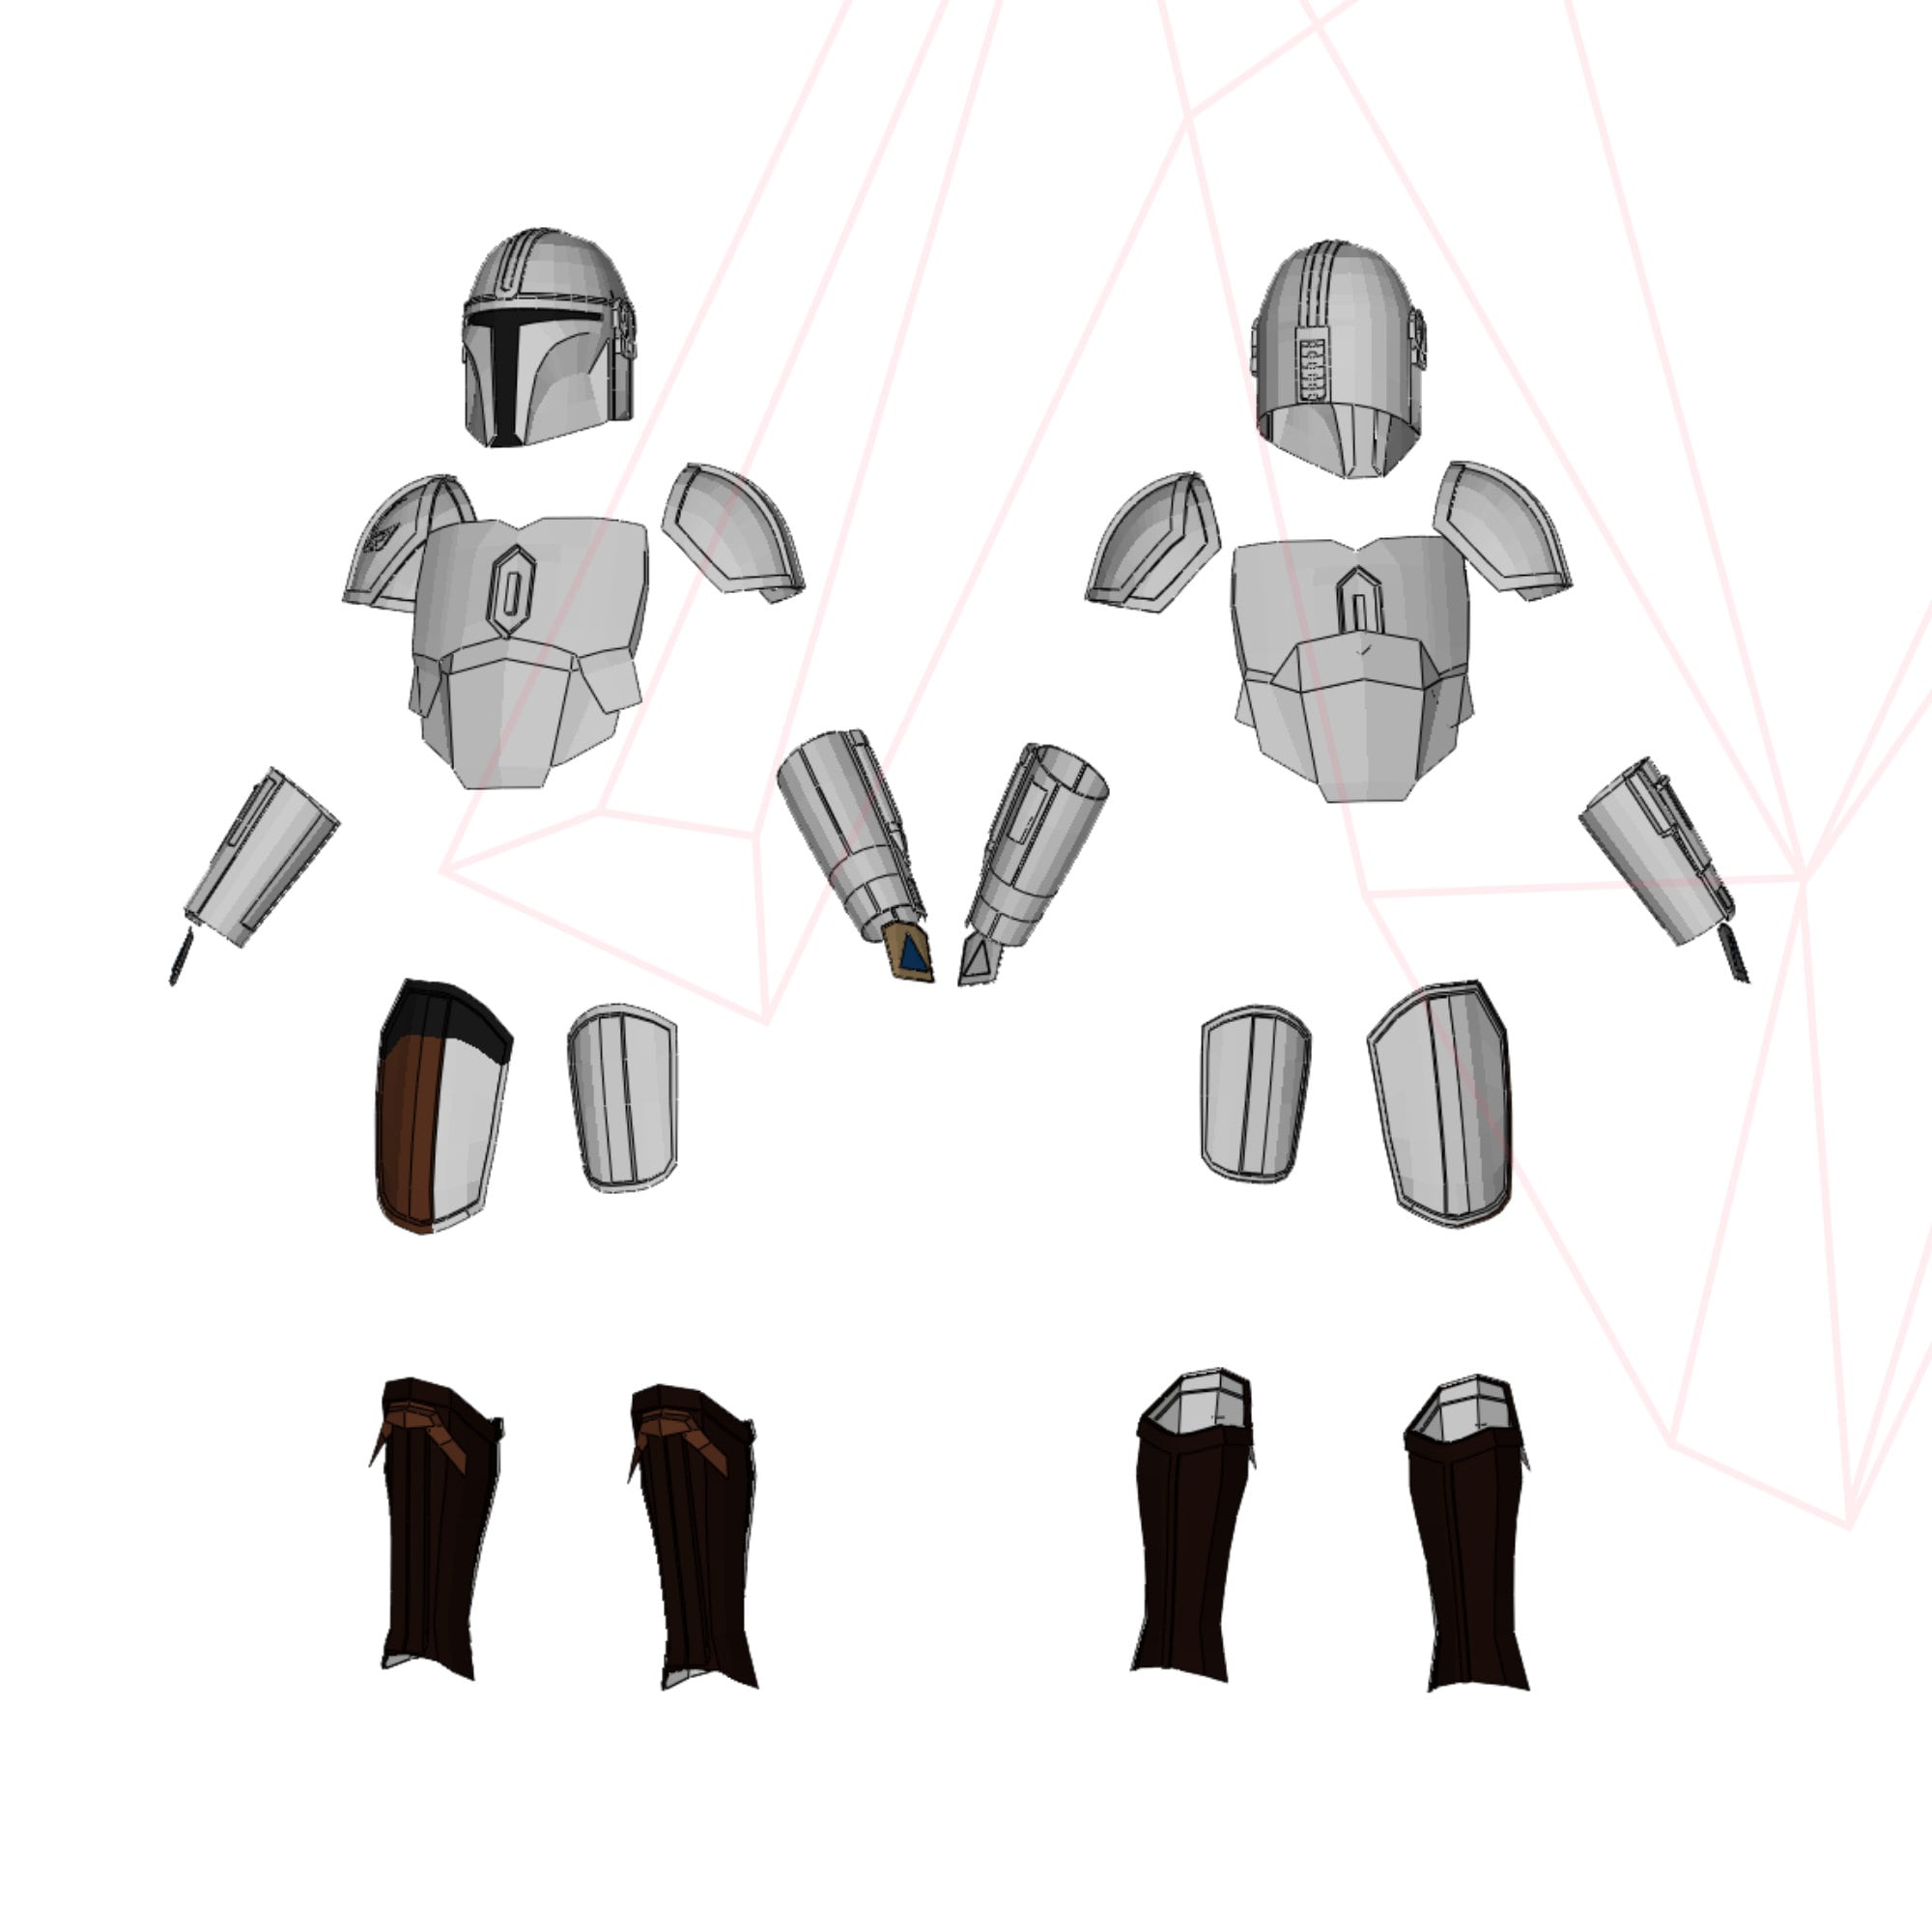 Mandalorian Beskar Armor Pepakura Files Etsy